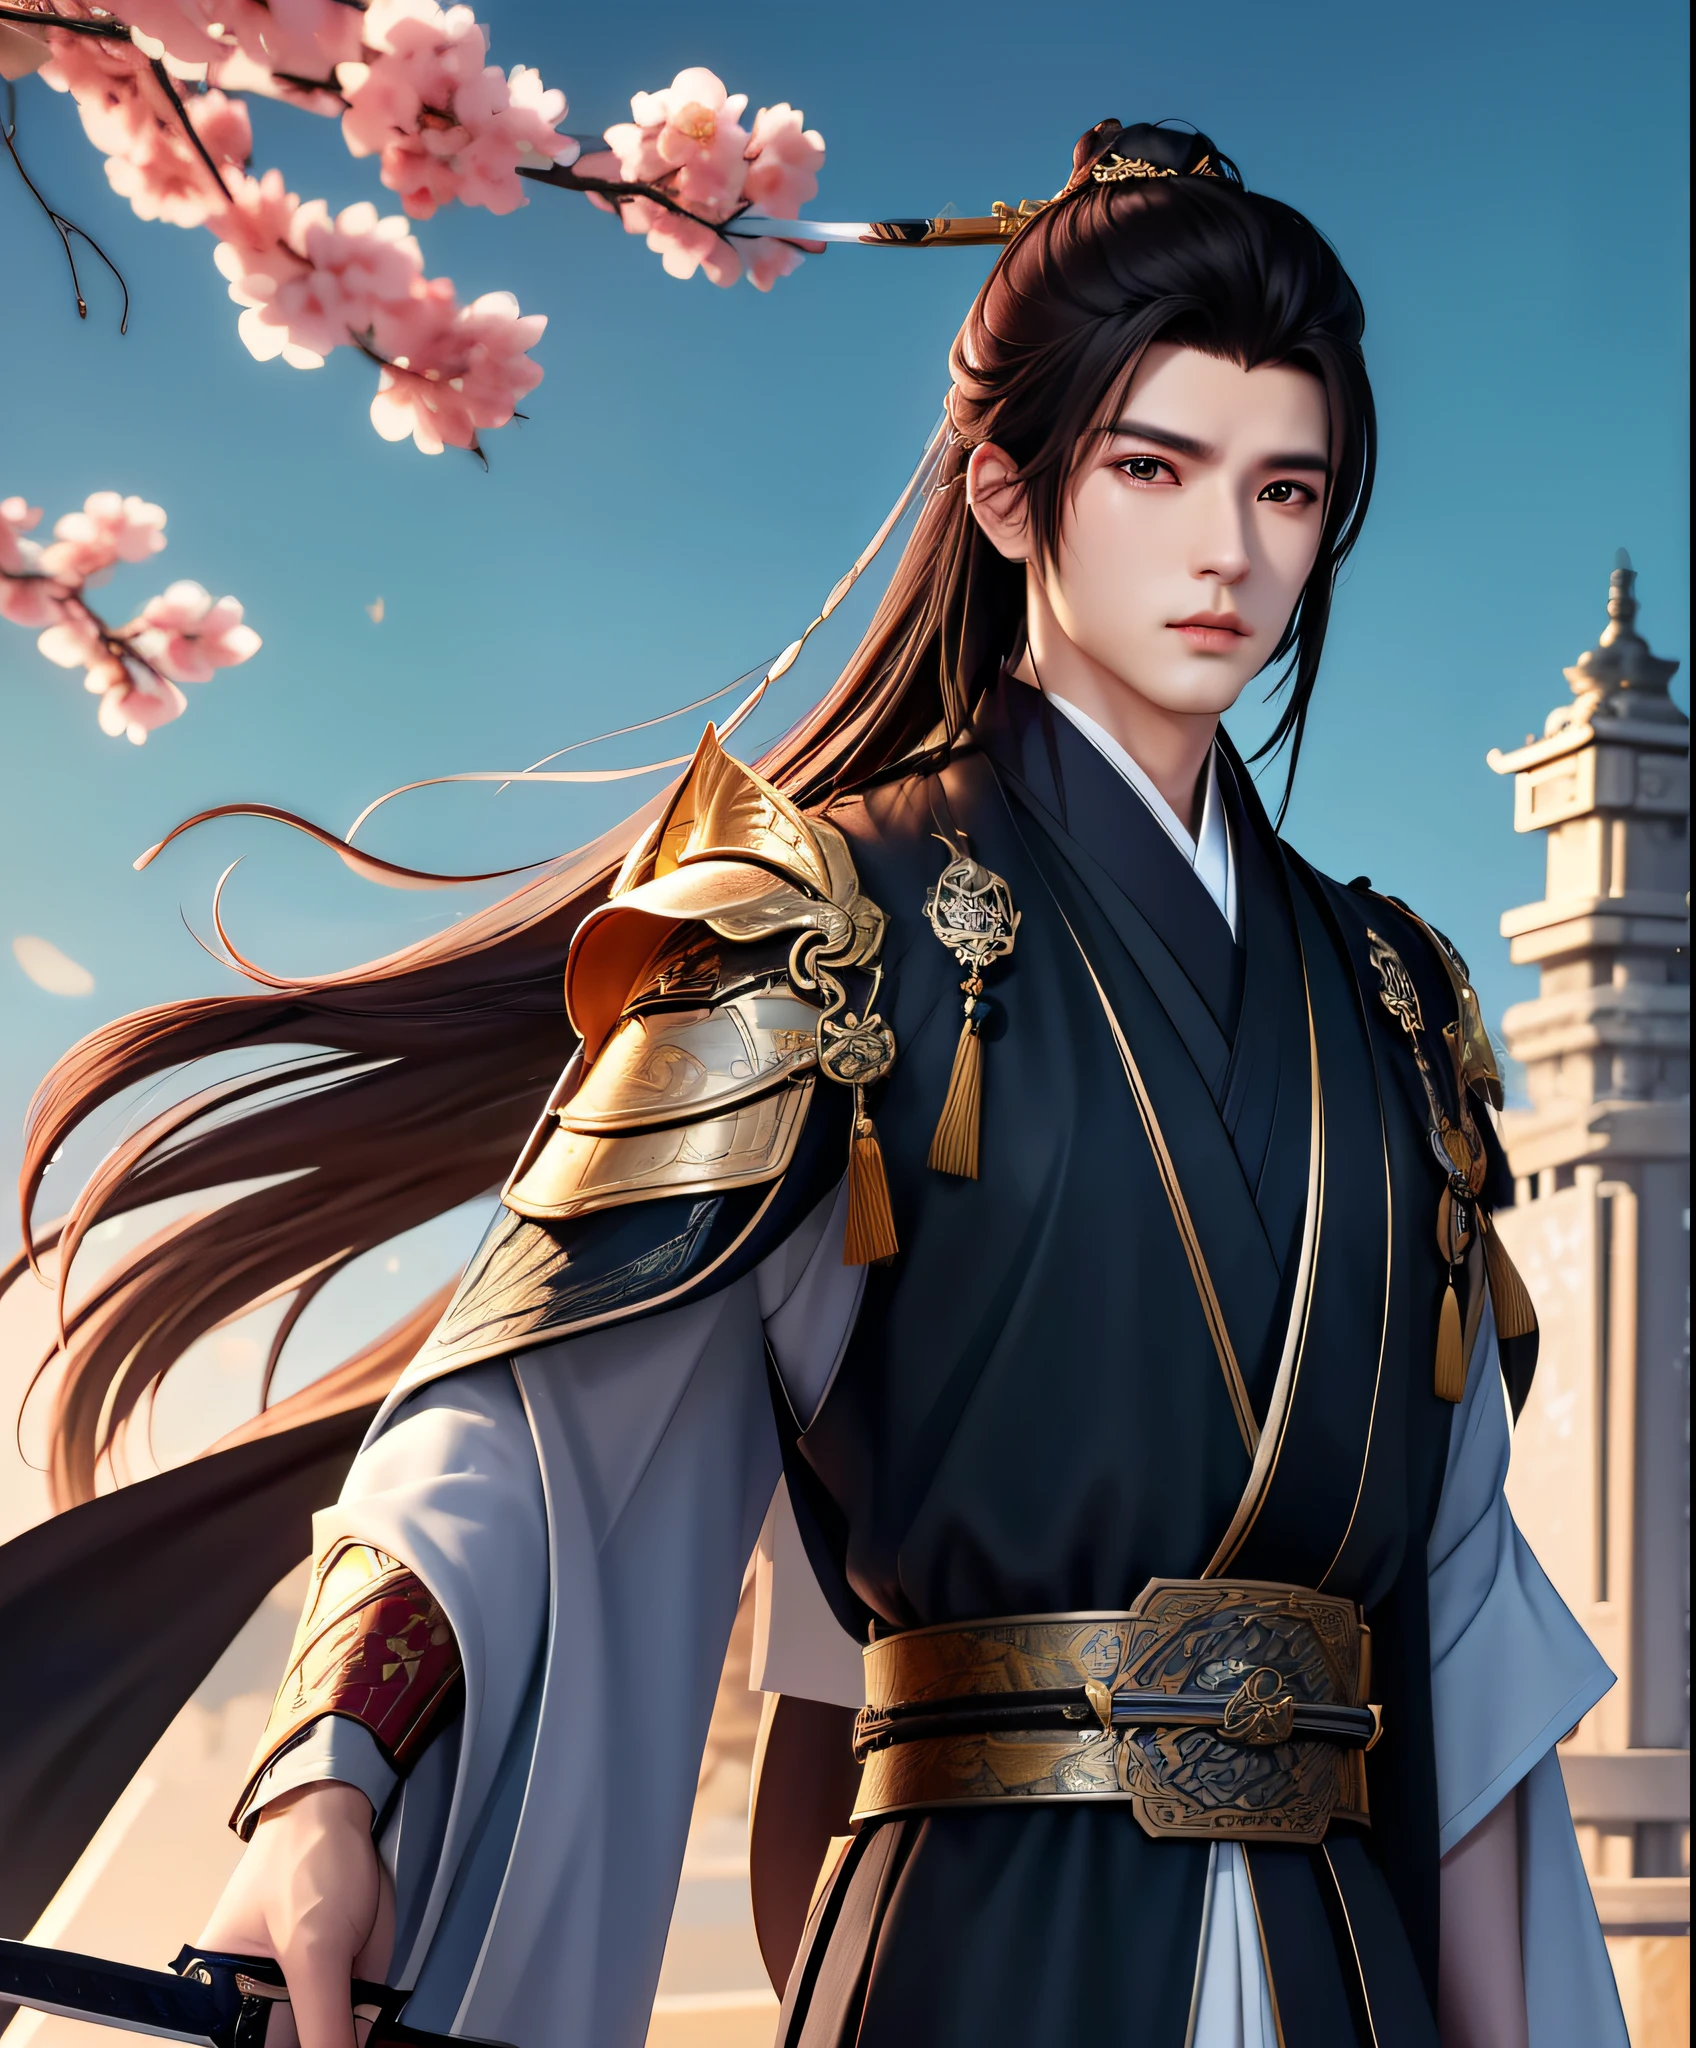 男, 美しい, 剣士, 江湖, 長剣を持っている, 中国風, 長い髪, 立体的な顔の特徴, 黒いドレス, ボサボサの髪.